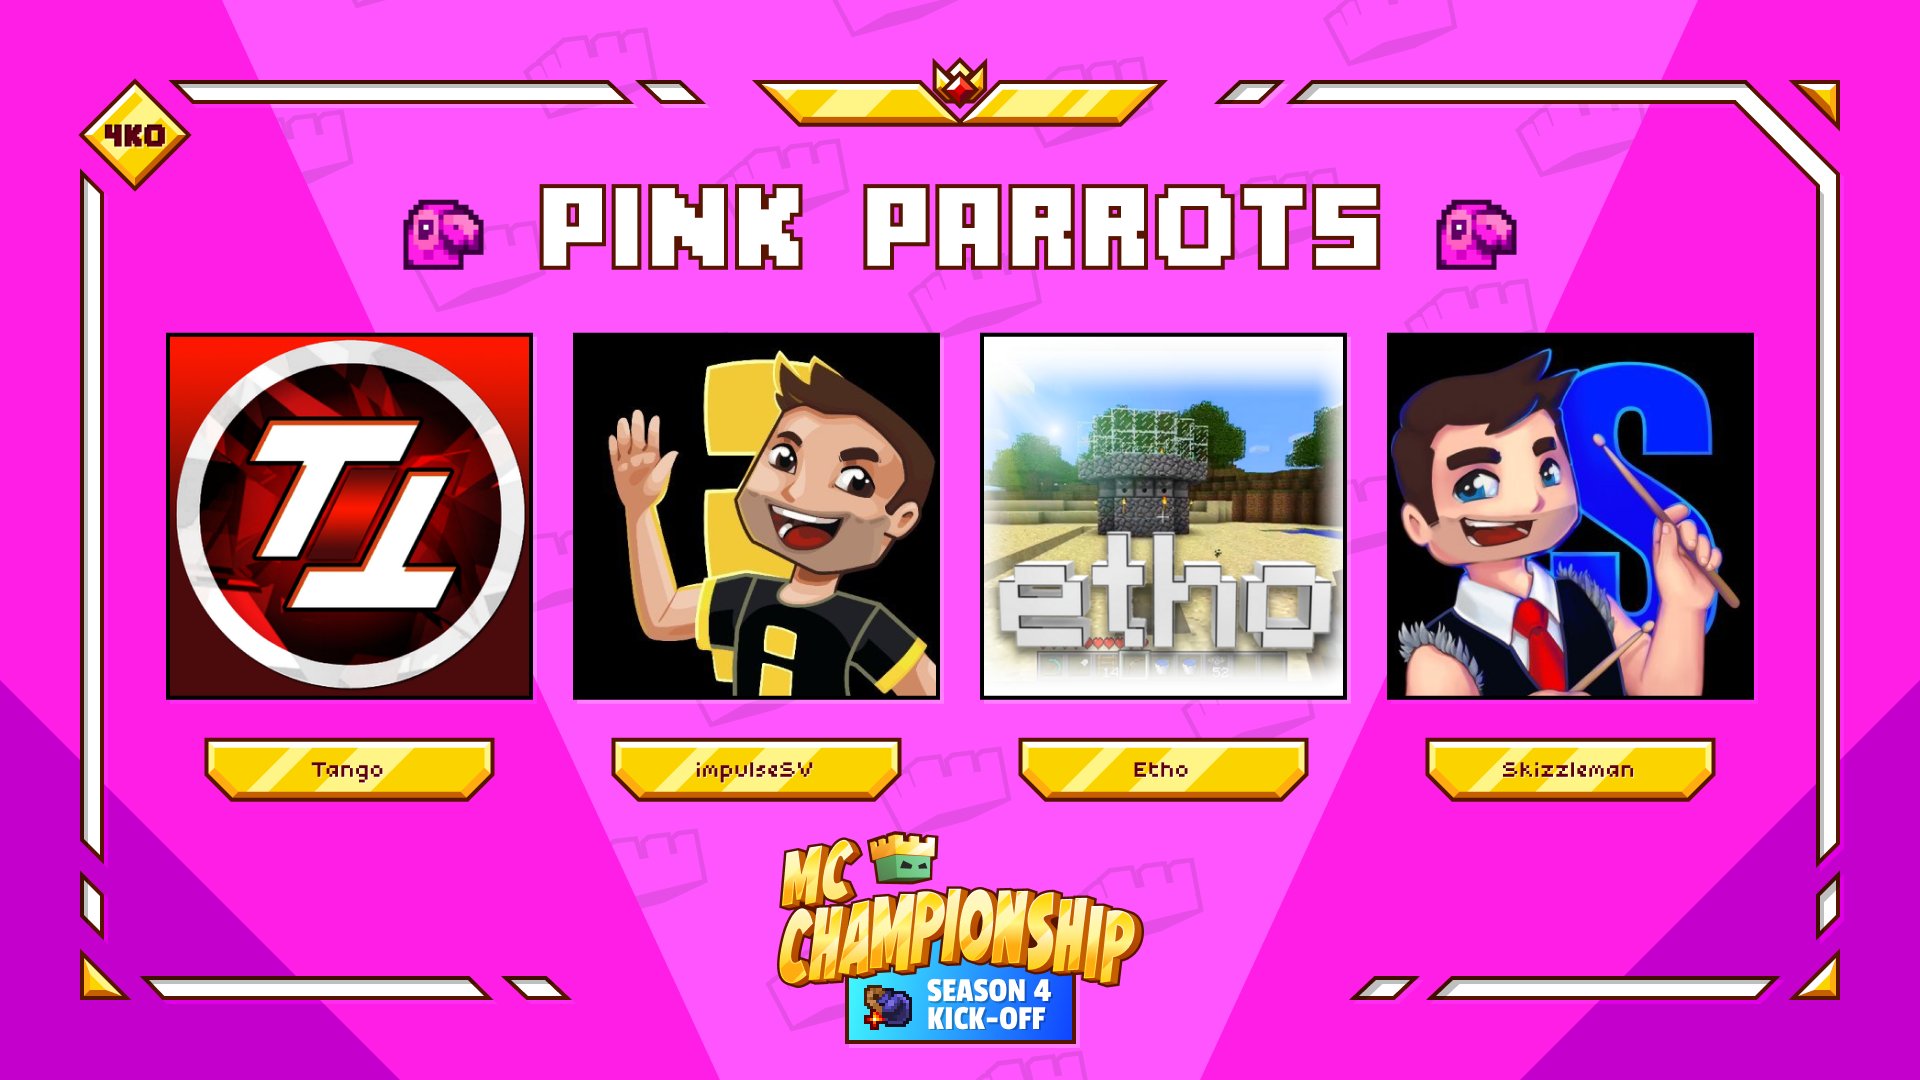 L'équipe des Pink Parrots pour la saison 4 des MC Championships.